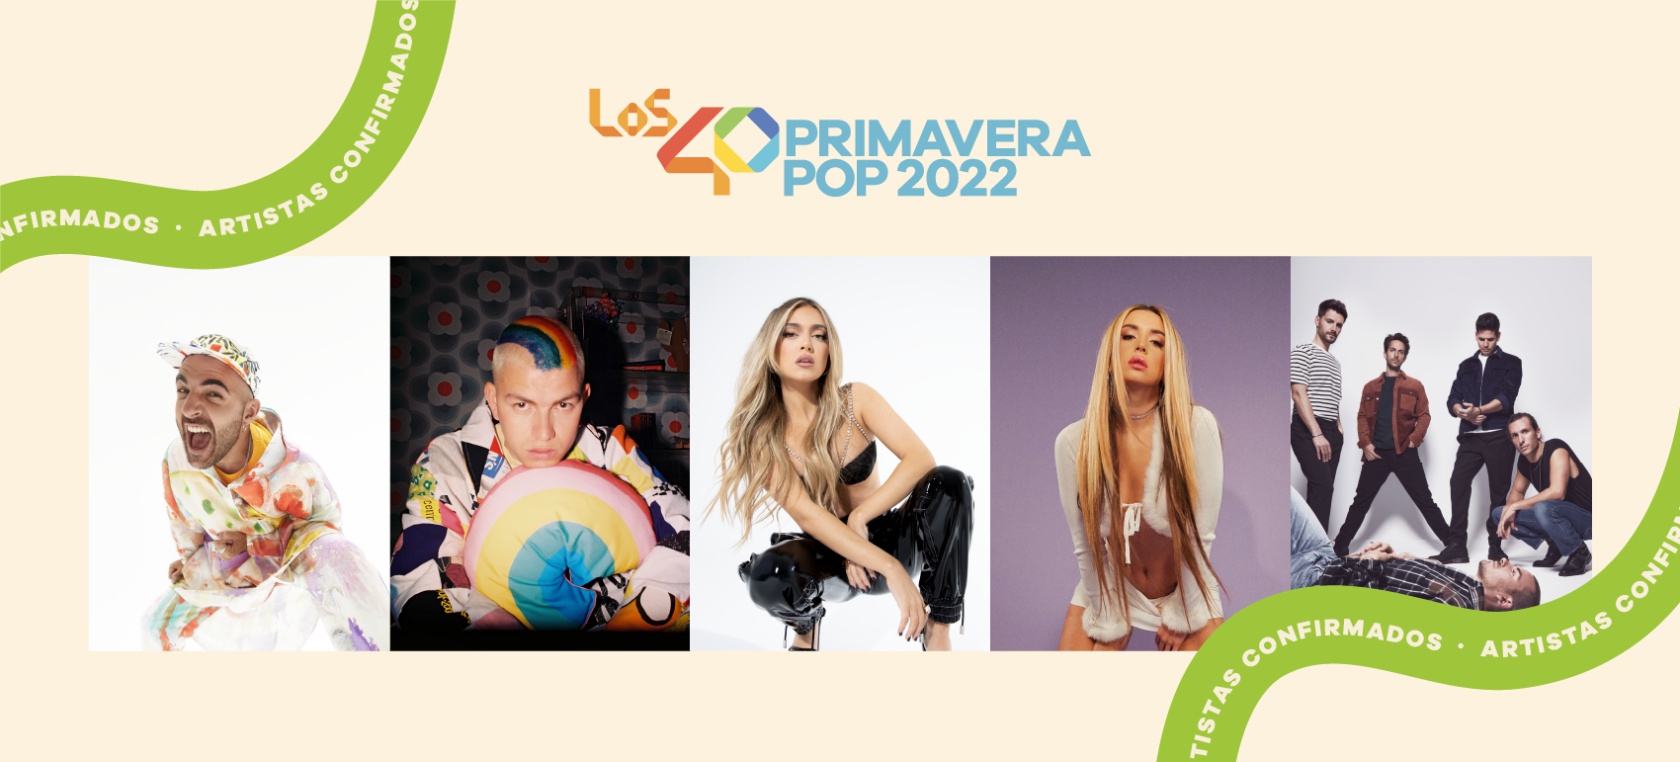 Lola Índigo, Ana Mena, Mau & Ricky y más, confirmados para el Festival LOS40 Primavera Pop 2022